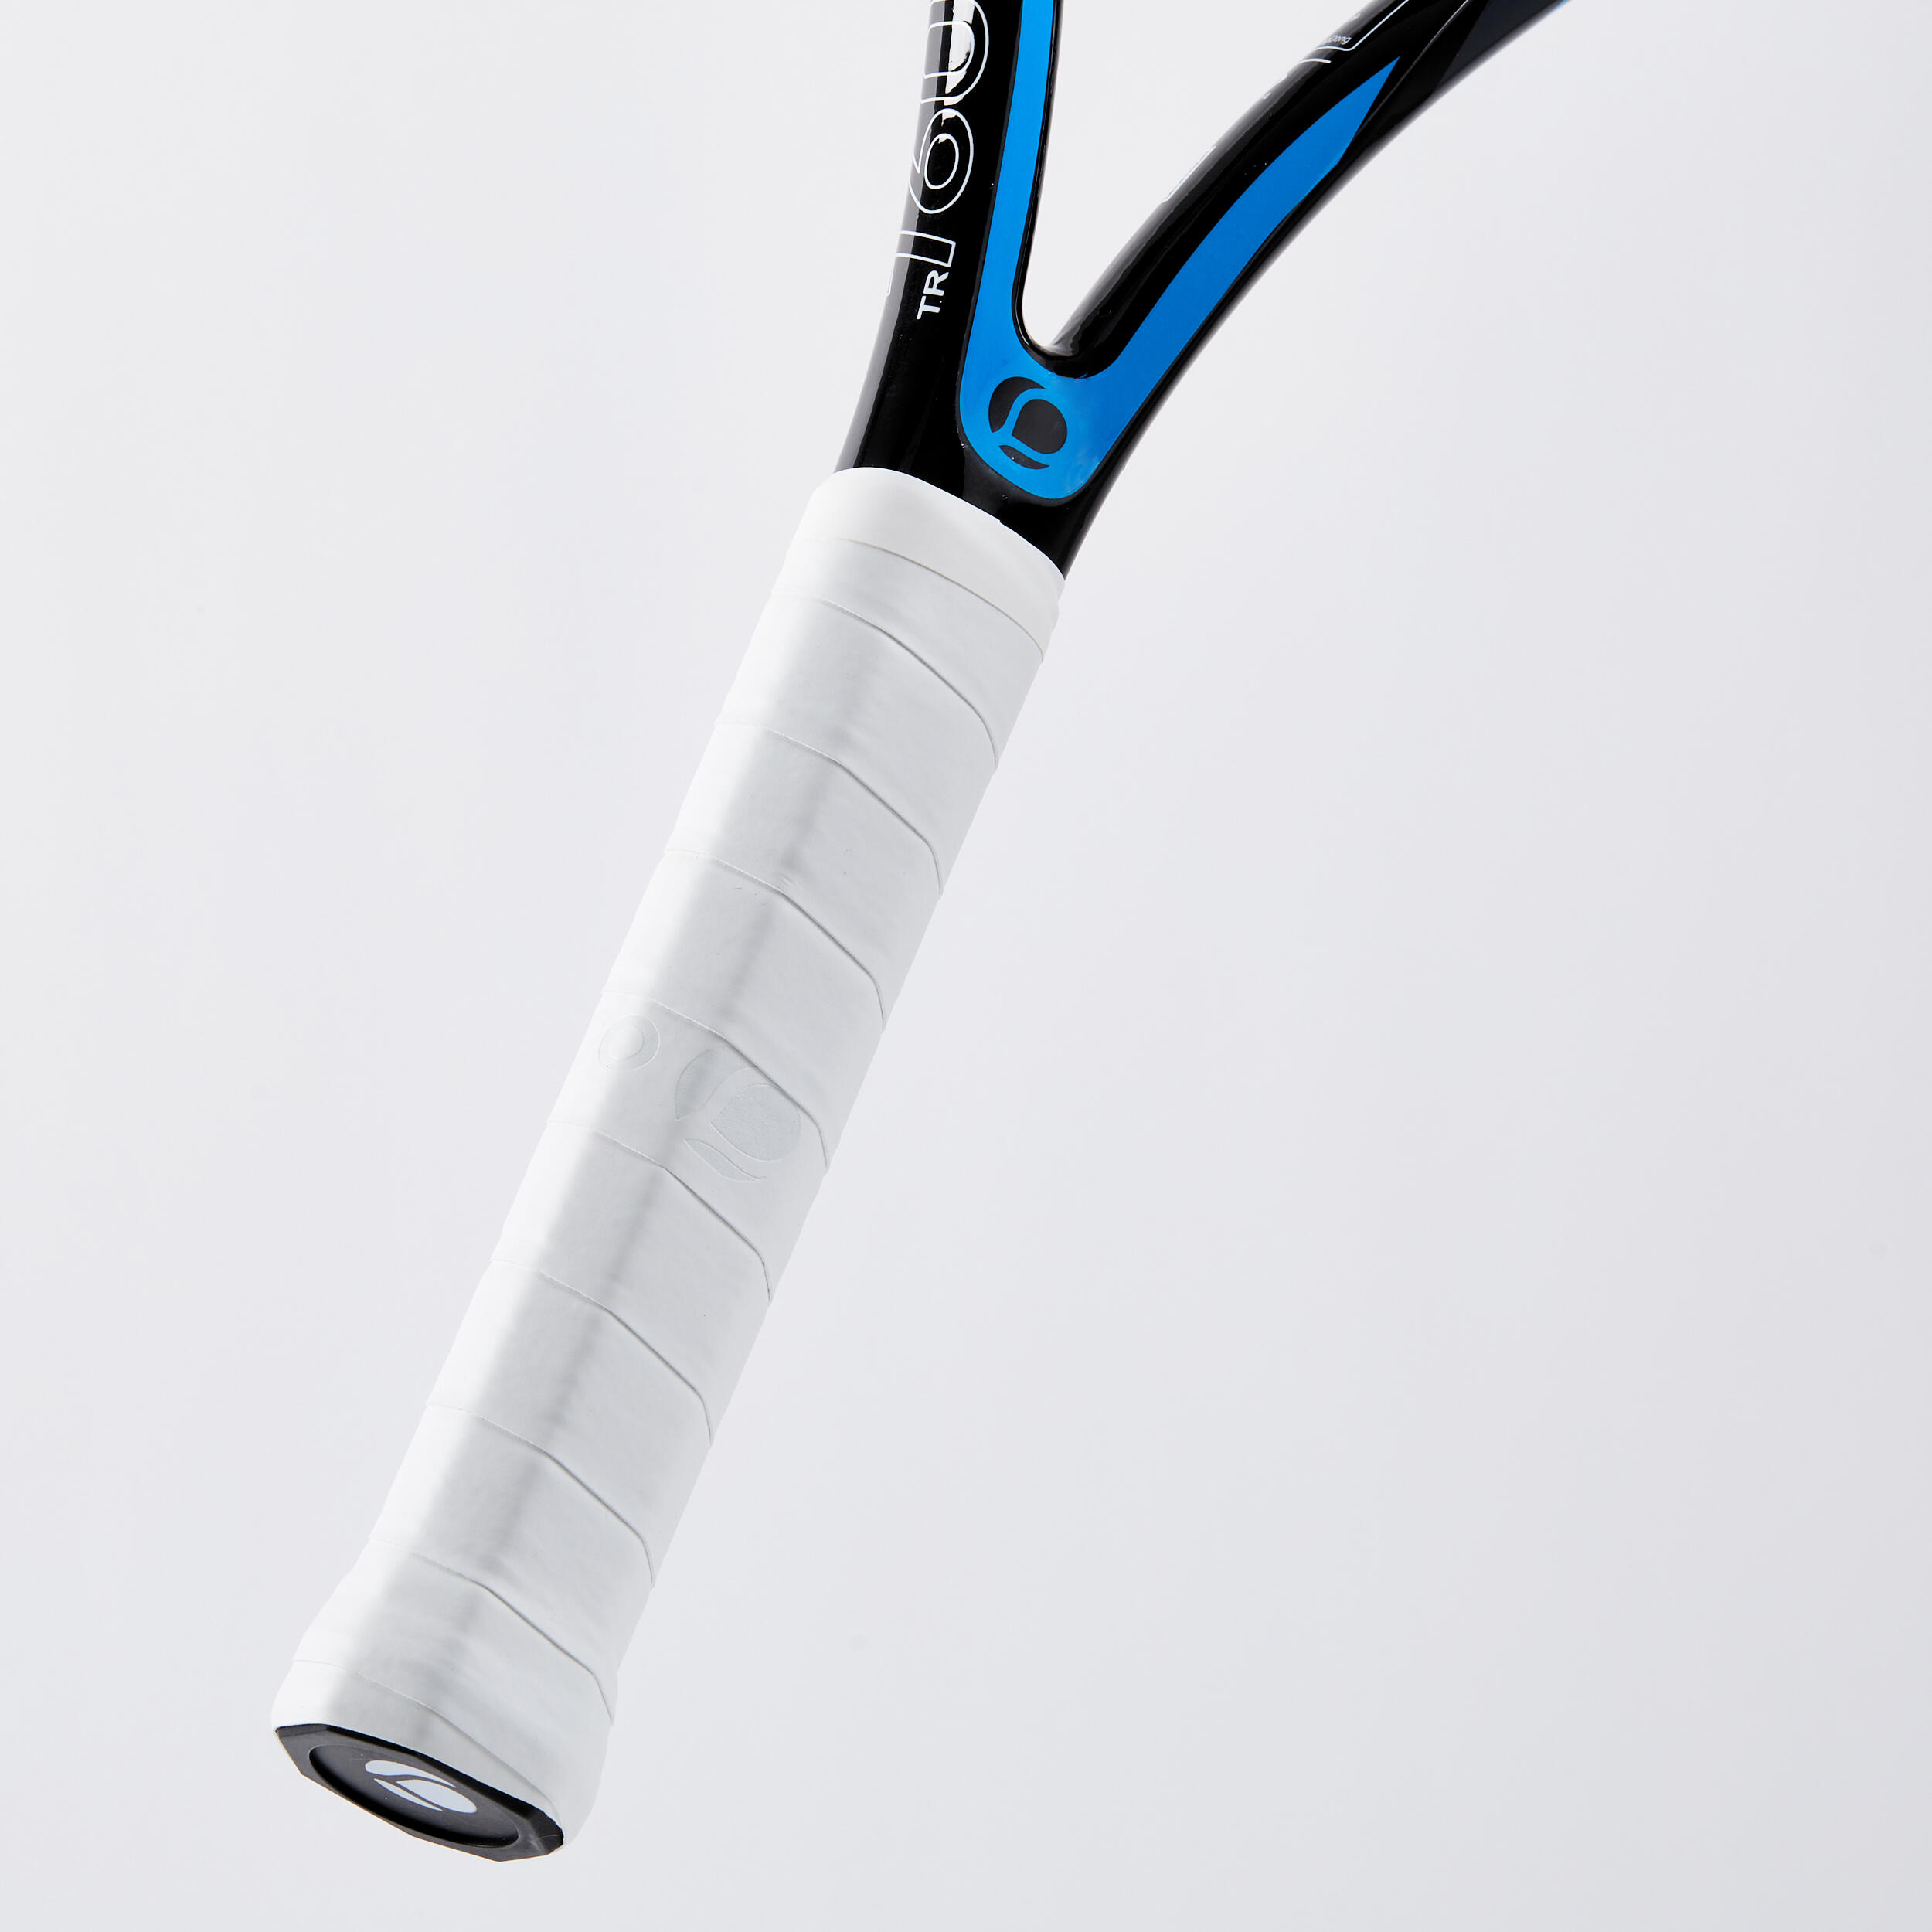 Raquette de tennis 270 g - Lite TR 160 bleu - ARTENGO